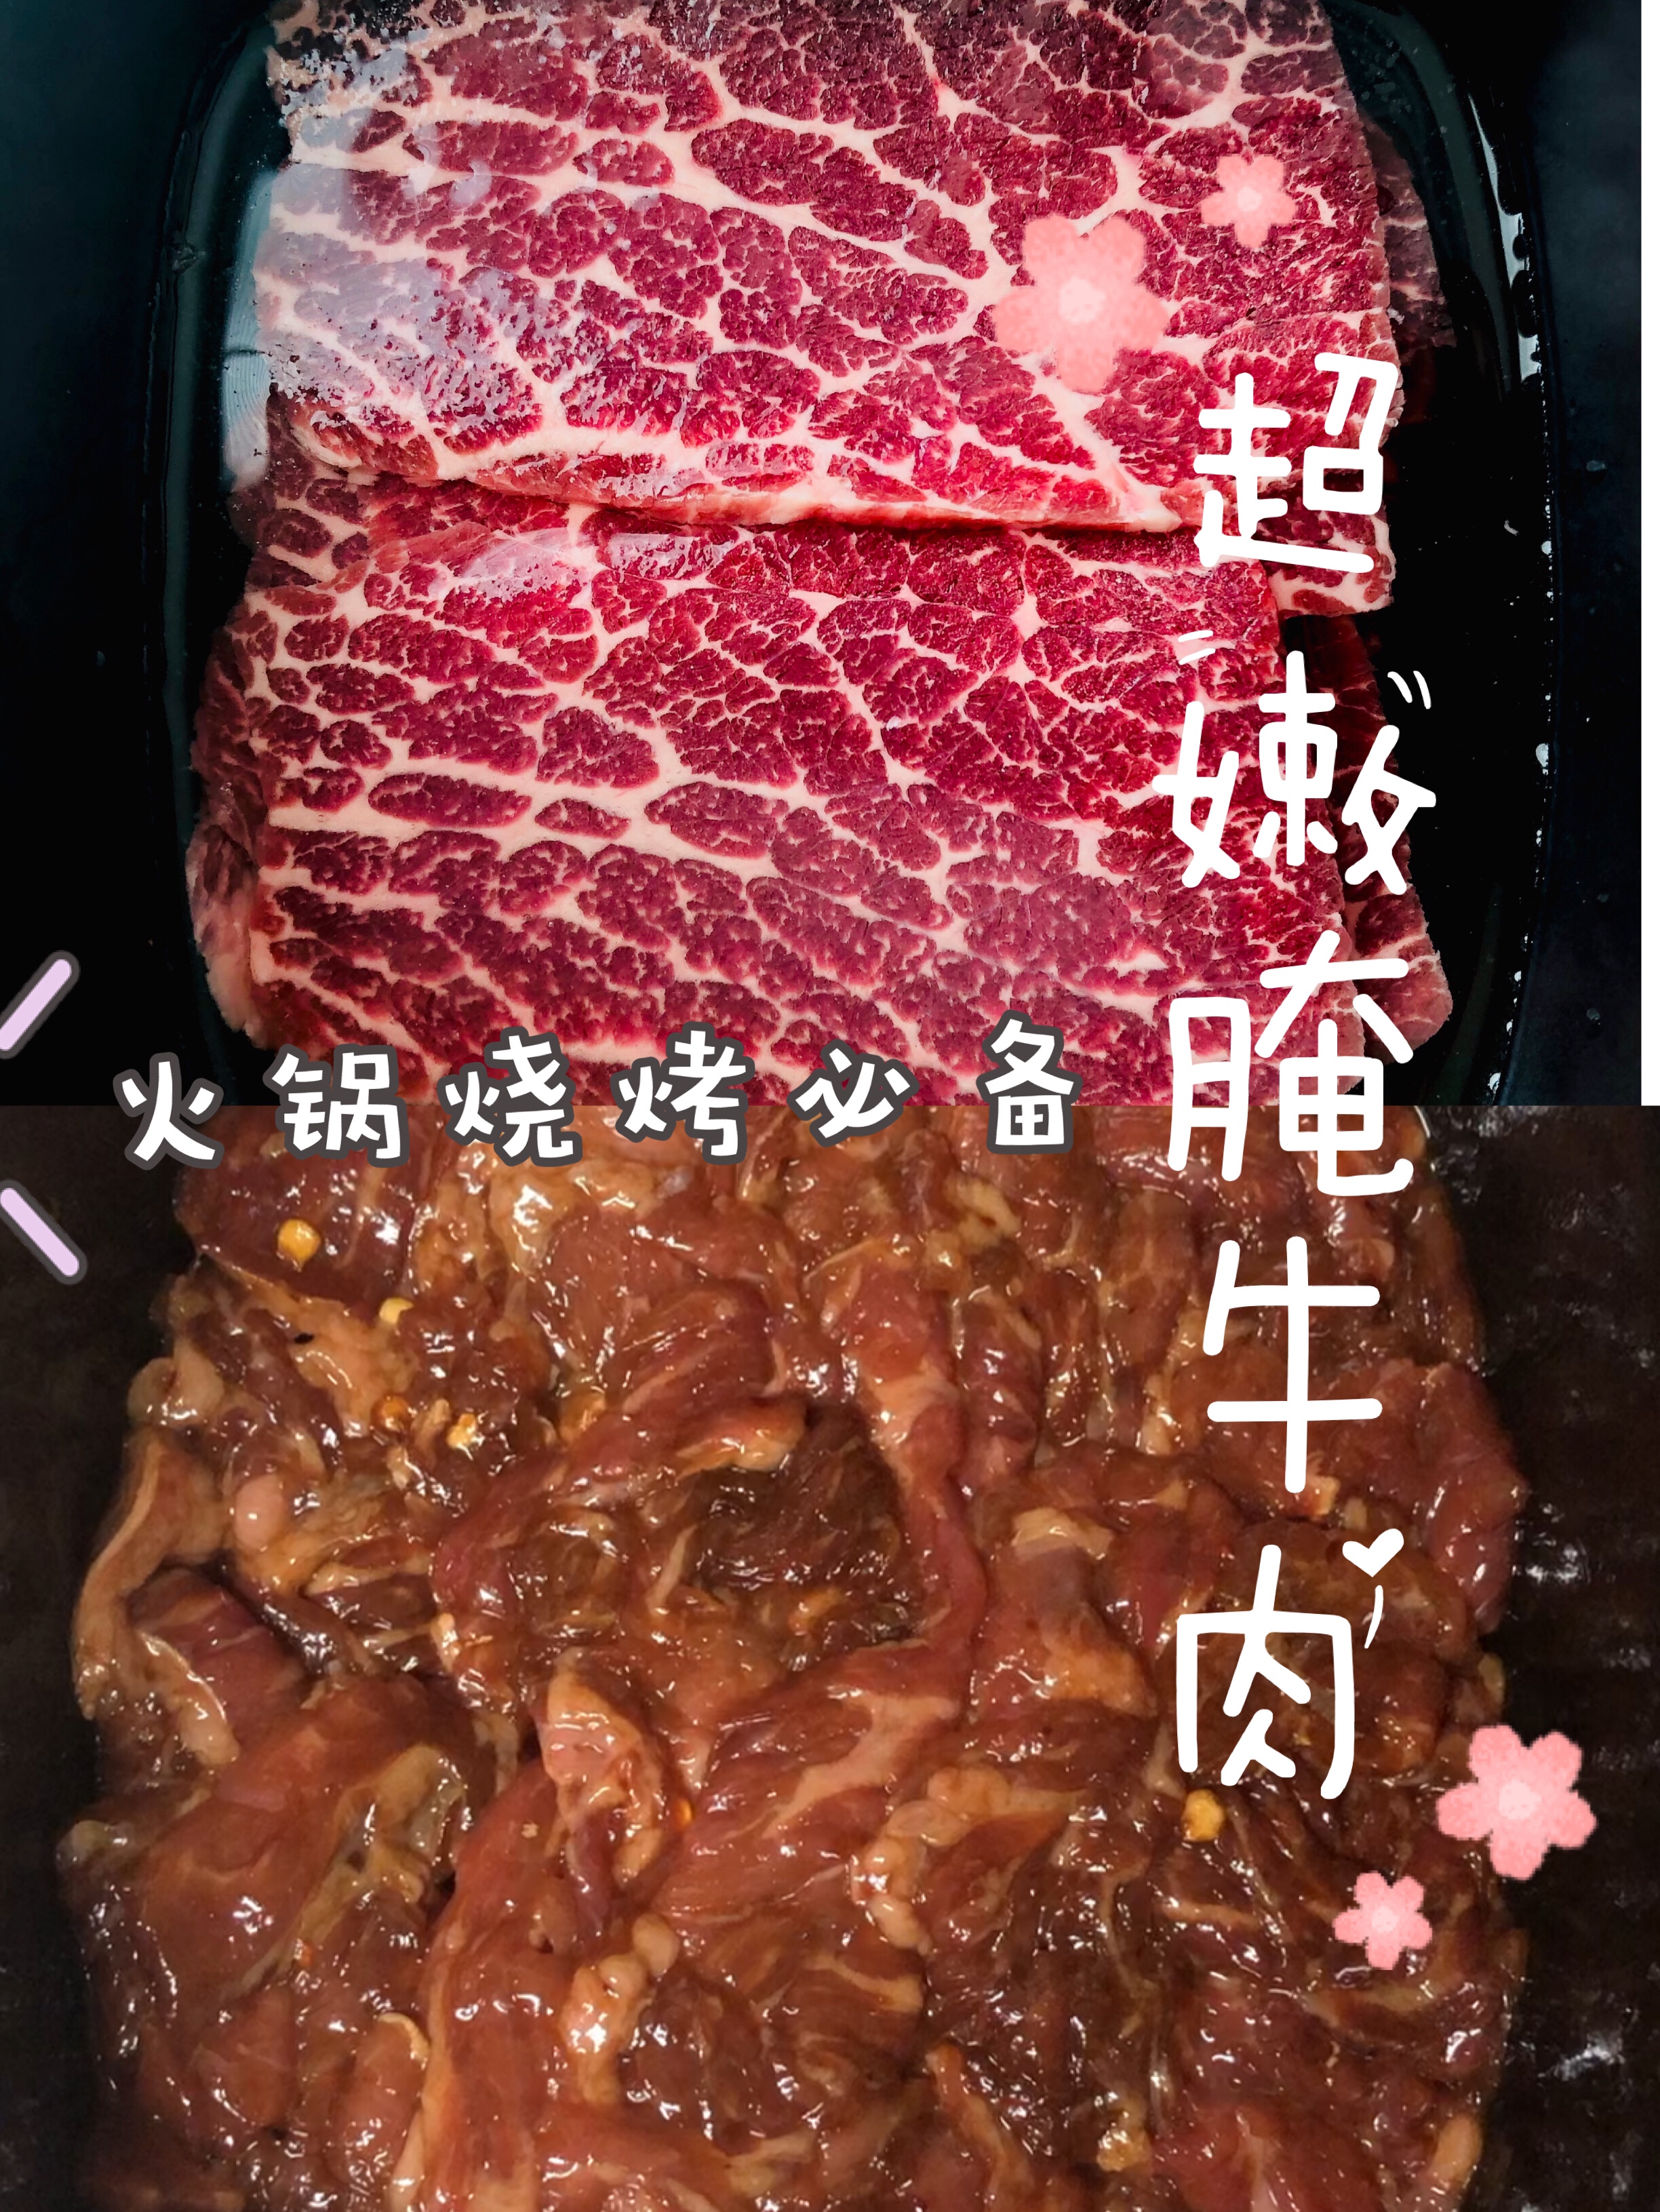 超嫩腌牛肉🥩火锅烧烤炒菜必备🔥